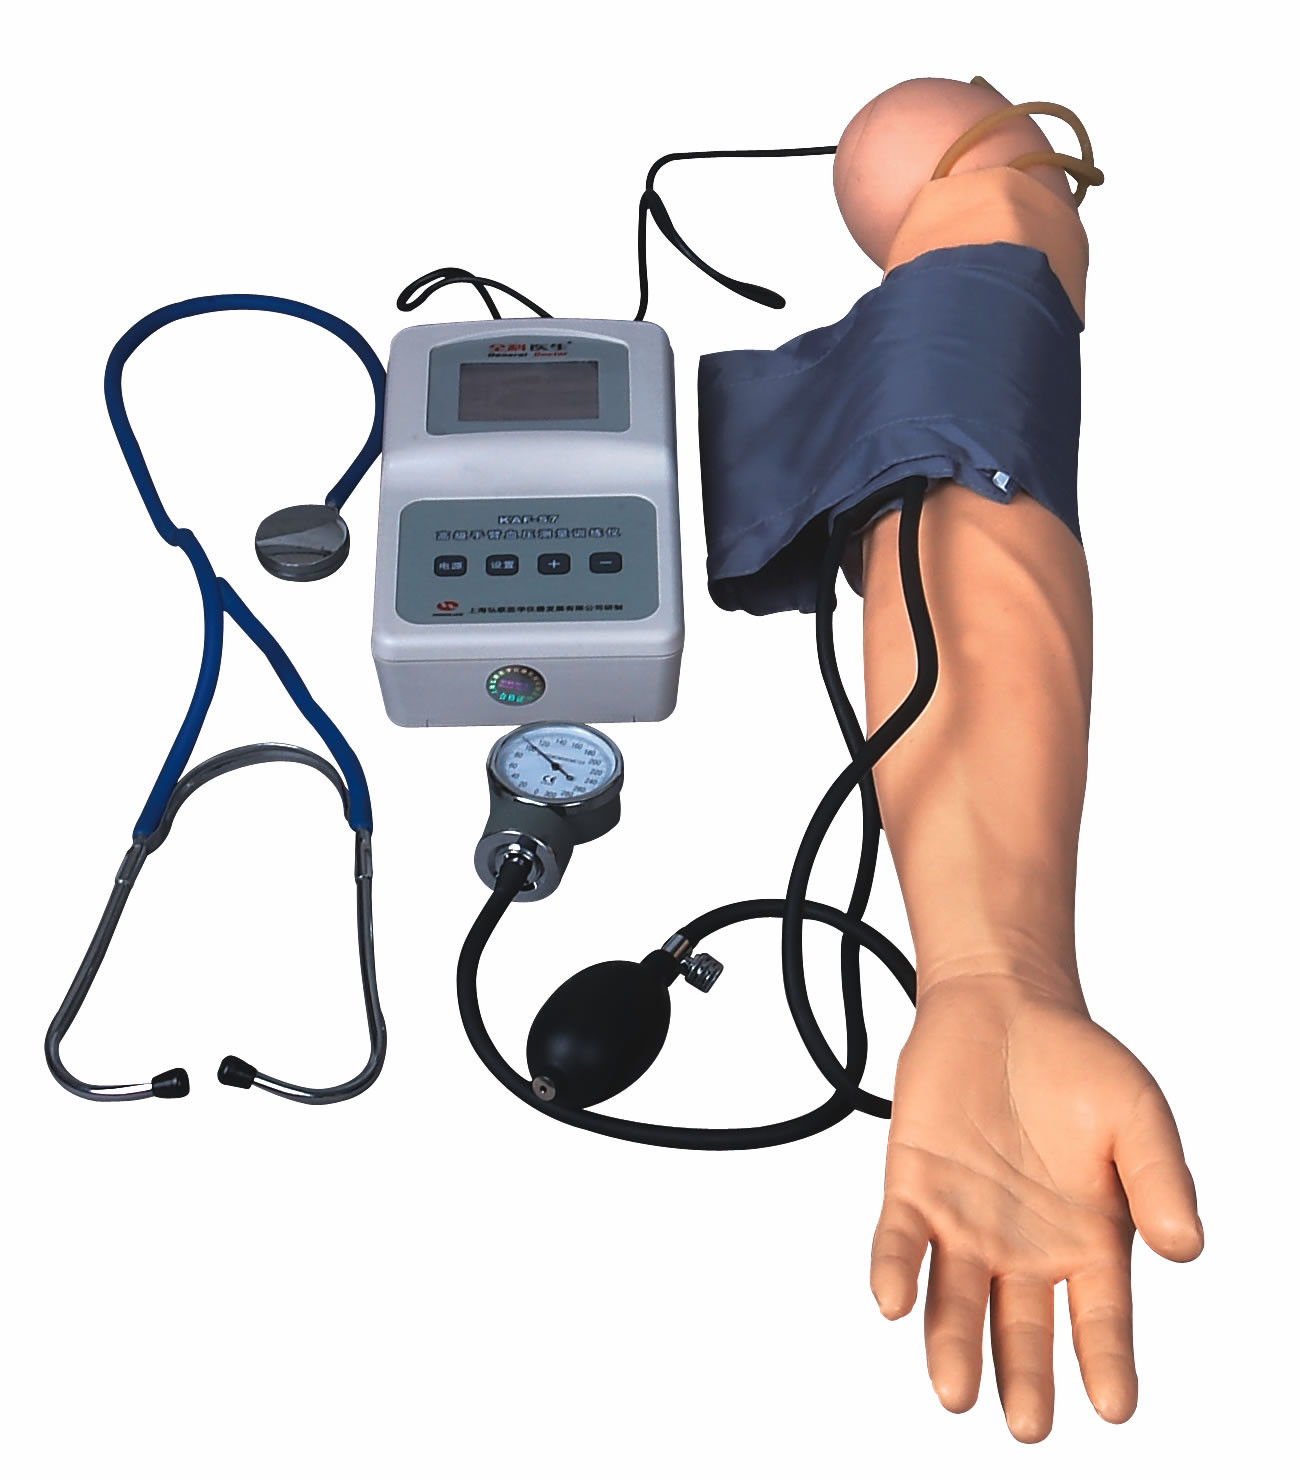 Рукоятка измерения BP с моделью кровяного давления тренировки для медицинских коллежей и школ